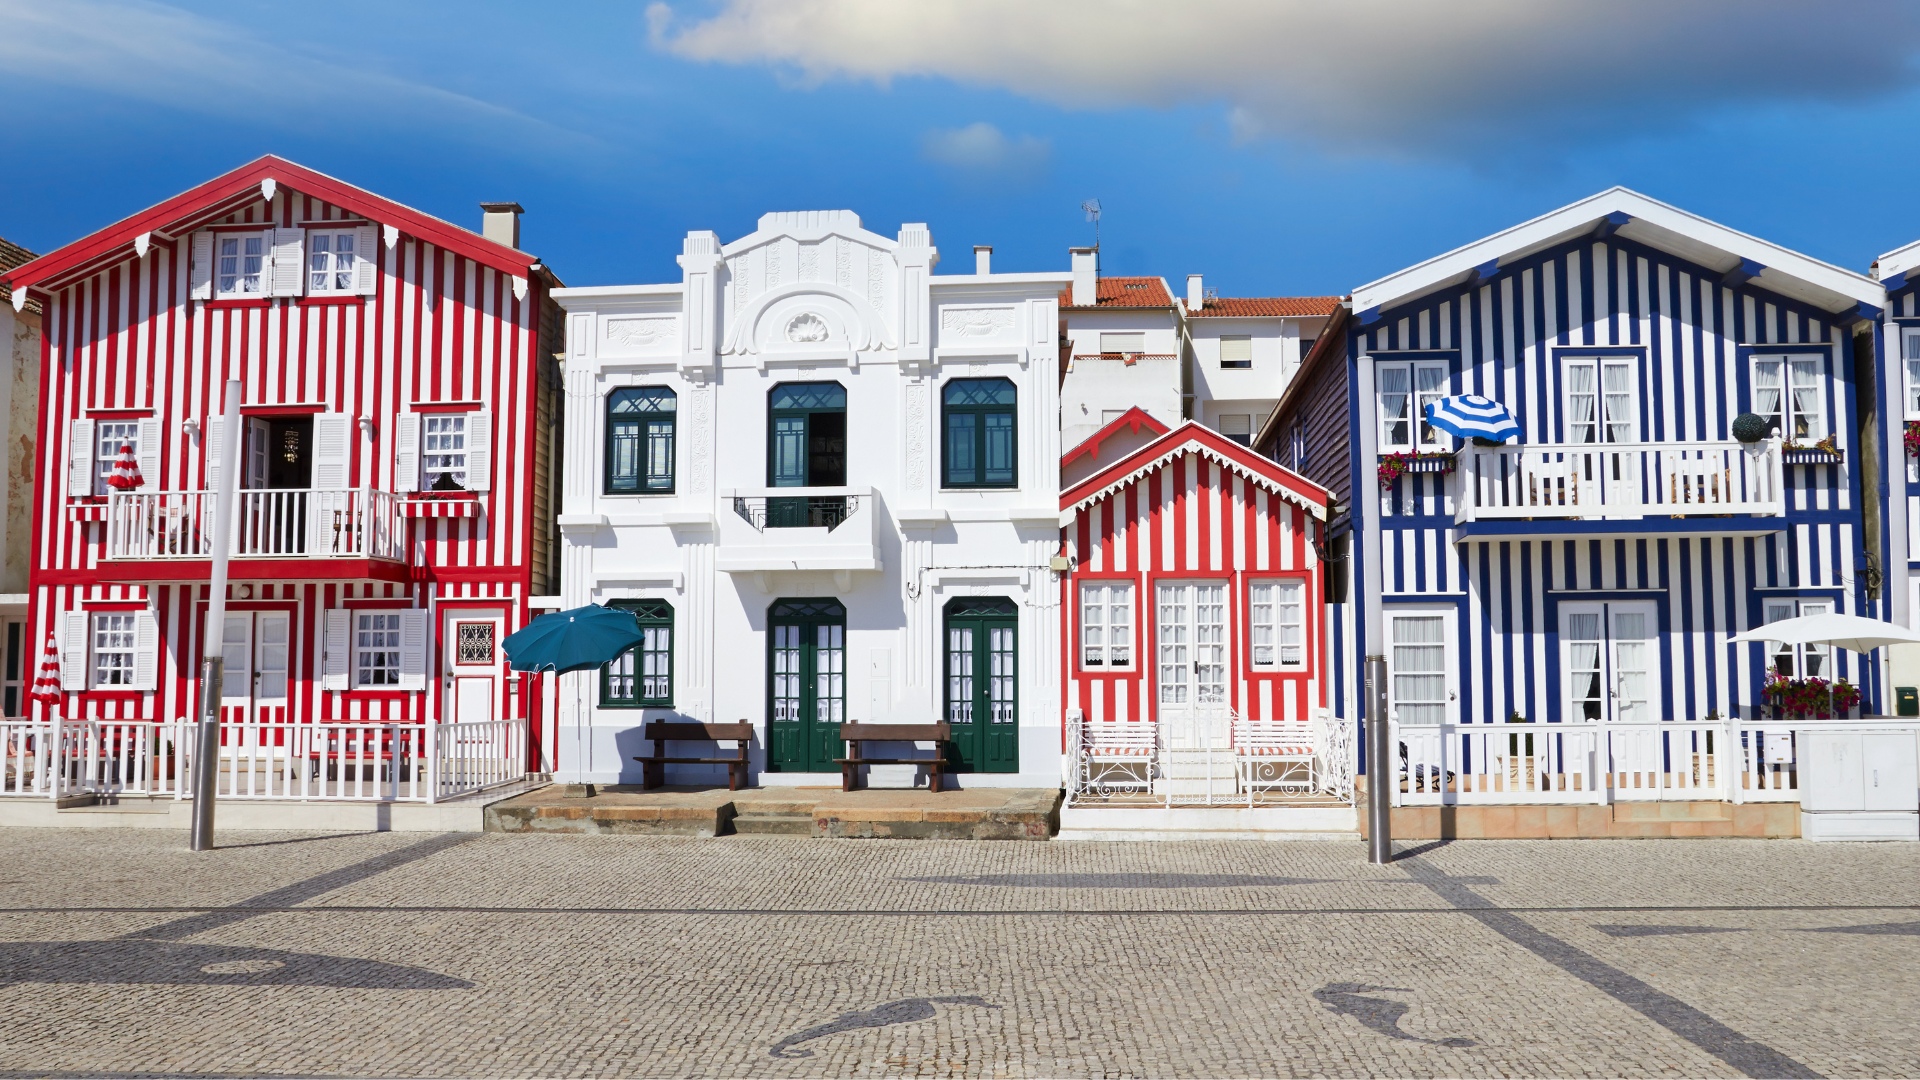 Animação Turística em Portugal | 2021